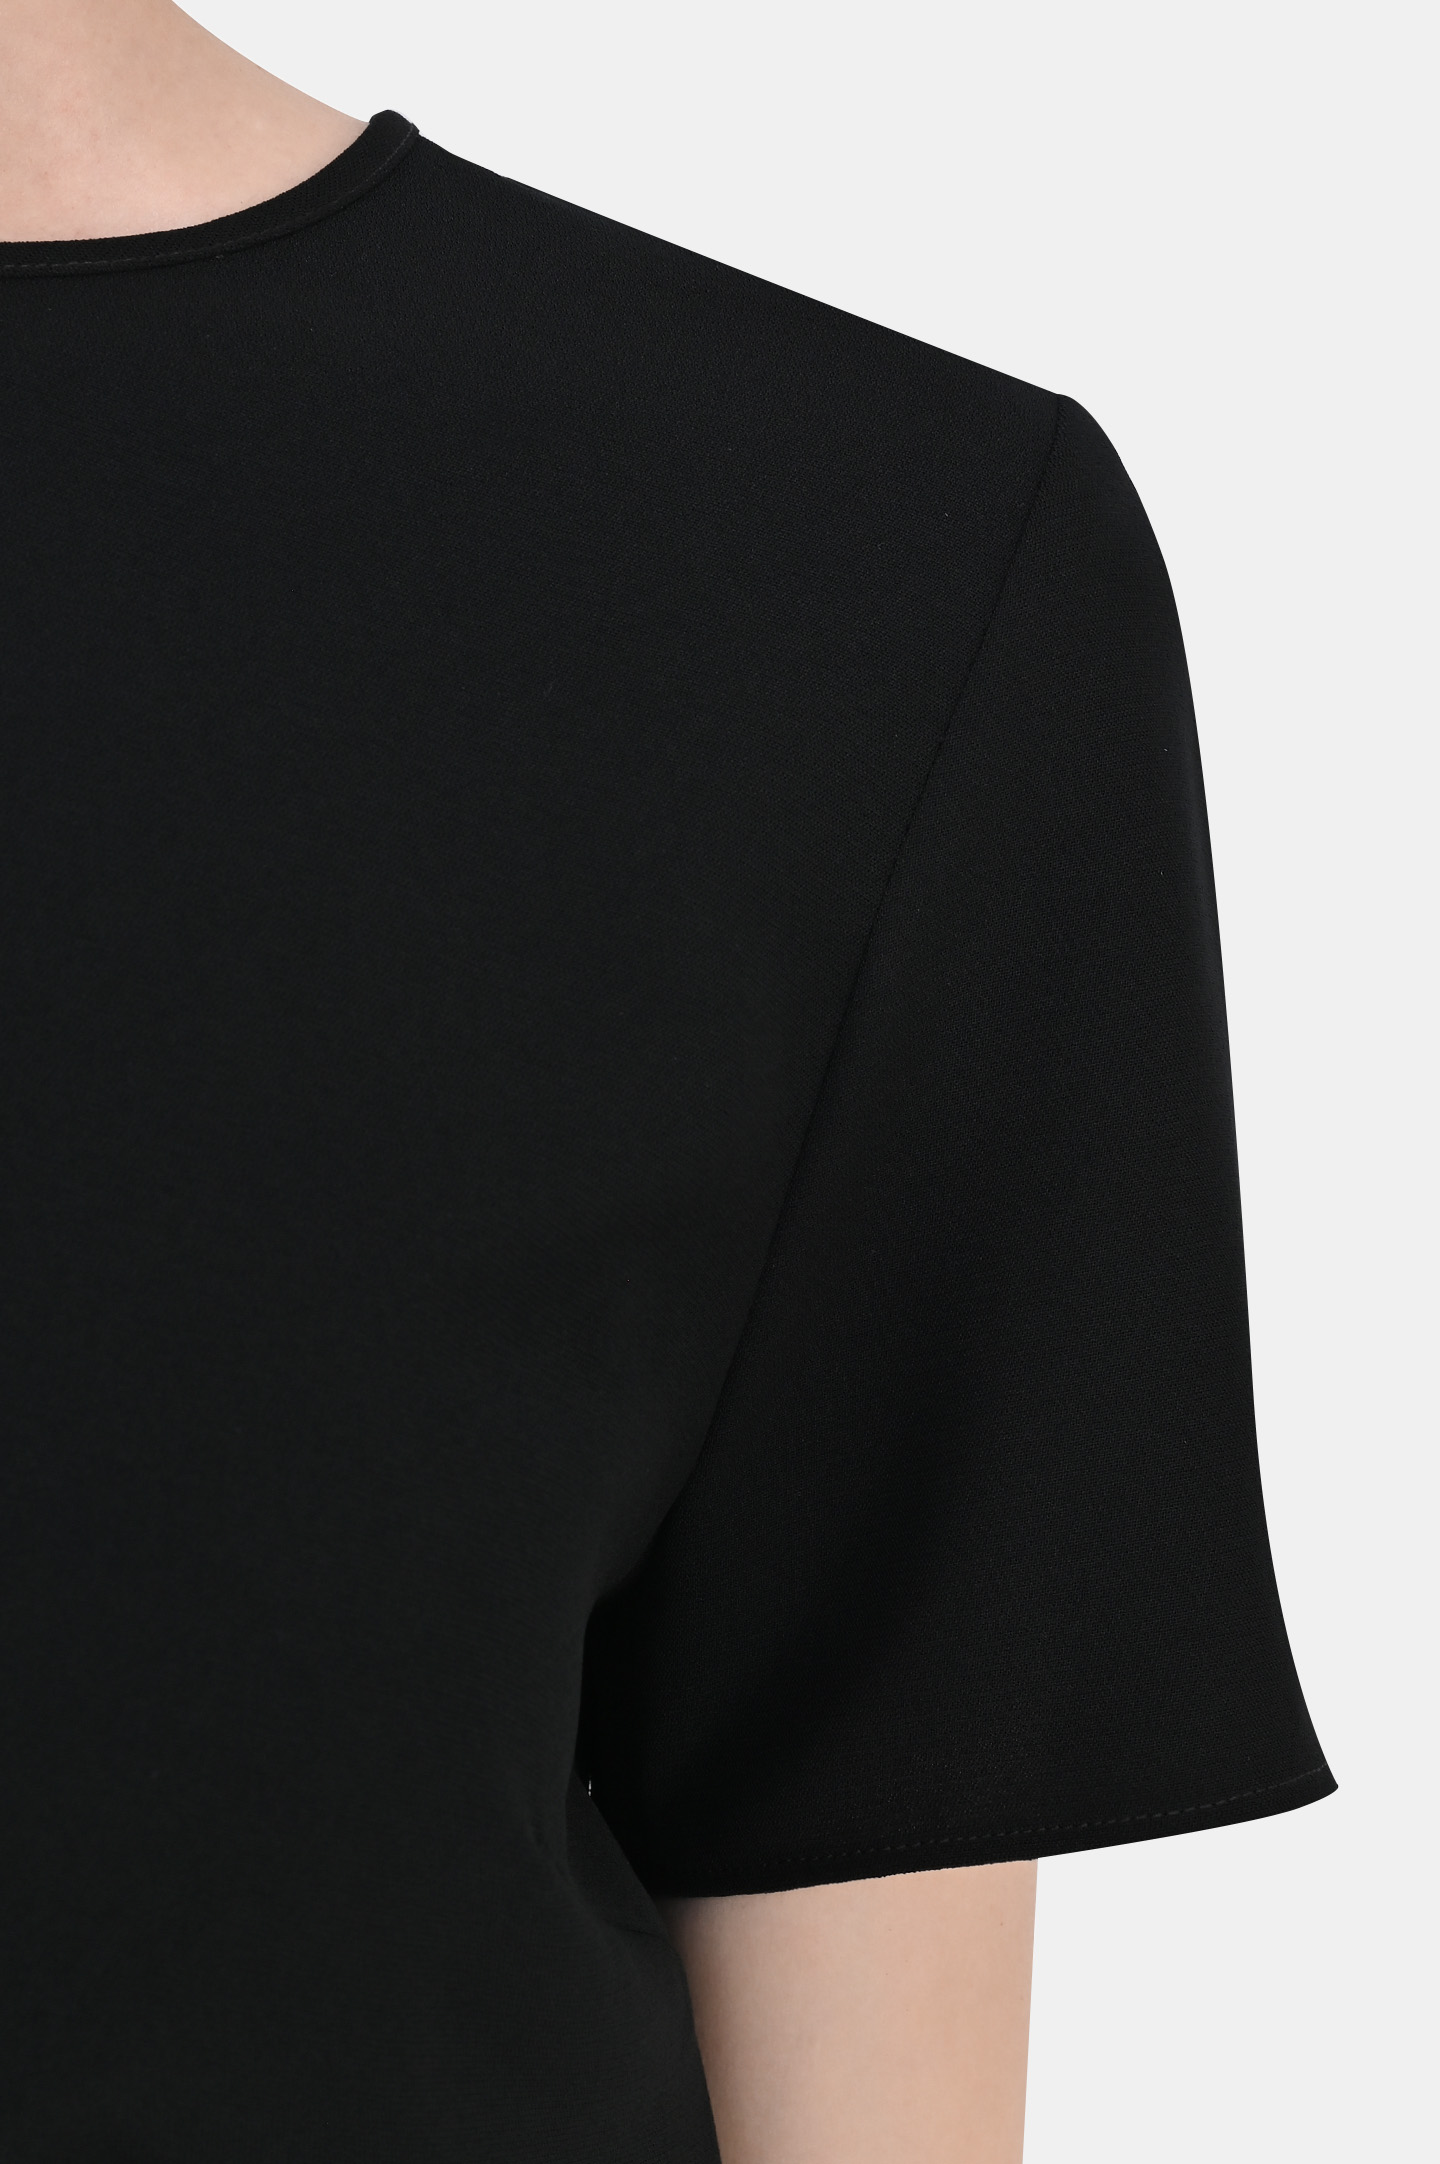 Блуза P.A.R.O.S.H. D310235X PIRATES, цвет: Черный, Женский